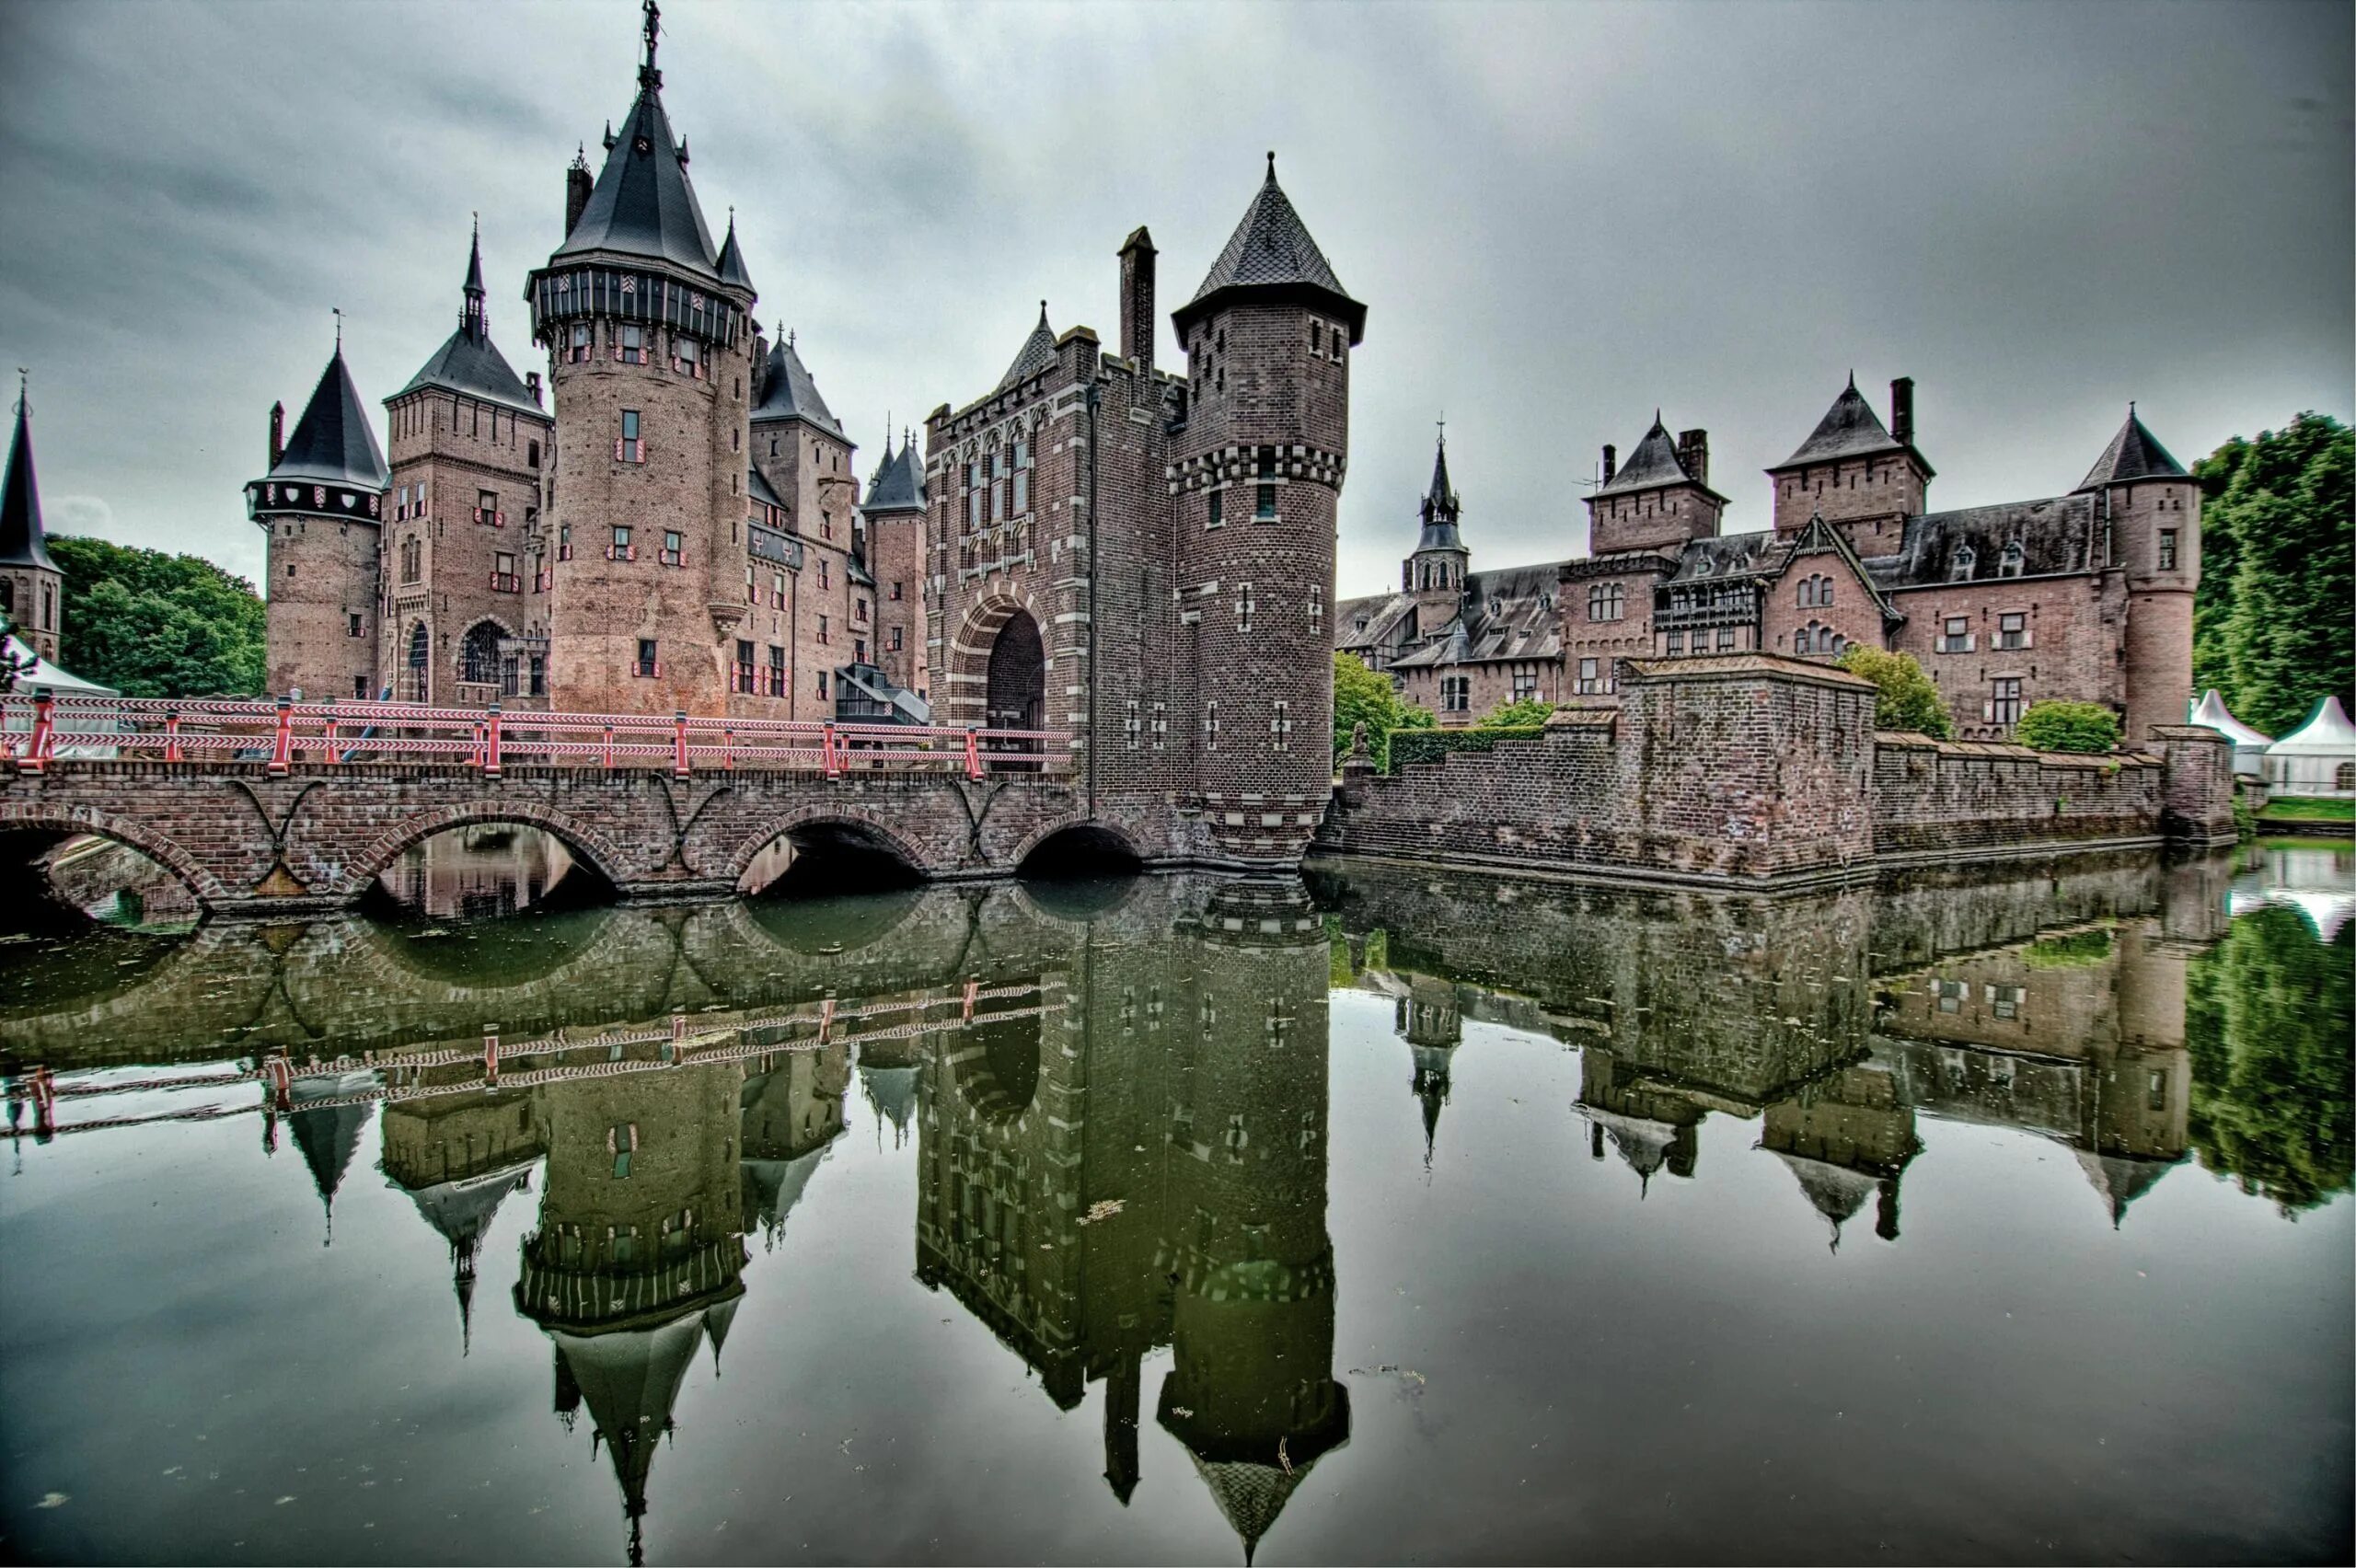 Известный средневековый замок. Замок в Голландии де Хаар. Замок де Хаар Утрехт. Де Хаар, Утрехт, Нидерланды. Замок де Хаар Нидерланды фото.